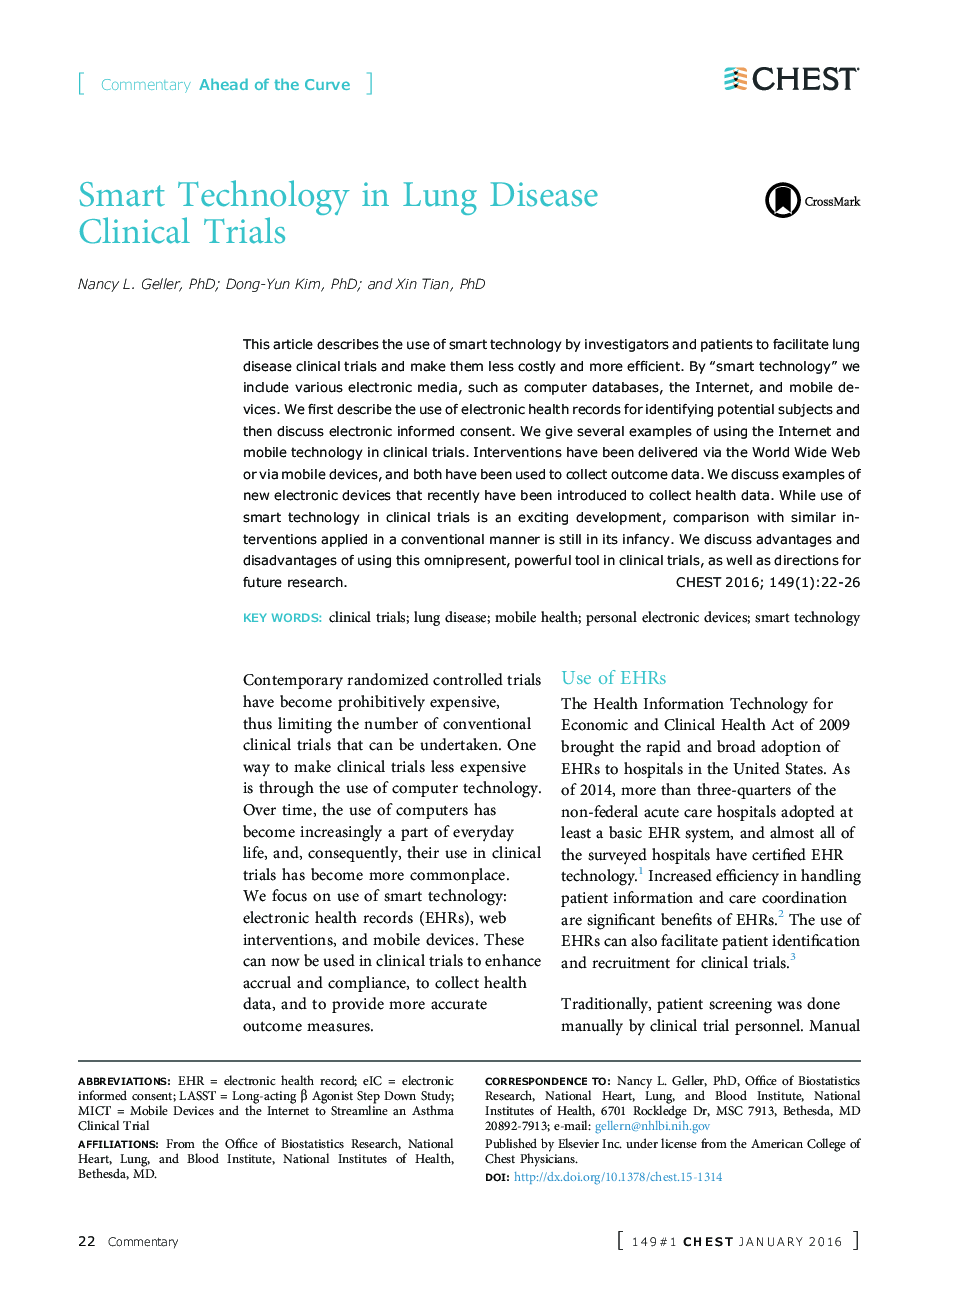 تکنولوژی هوشمند در آزمایشات بالینی بیماری ریه 